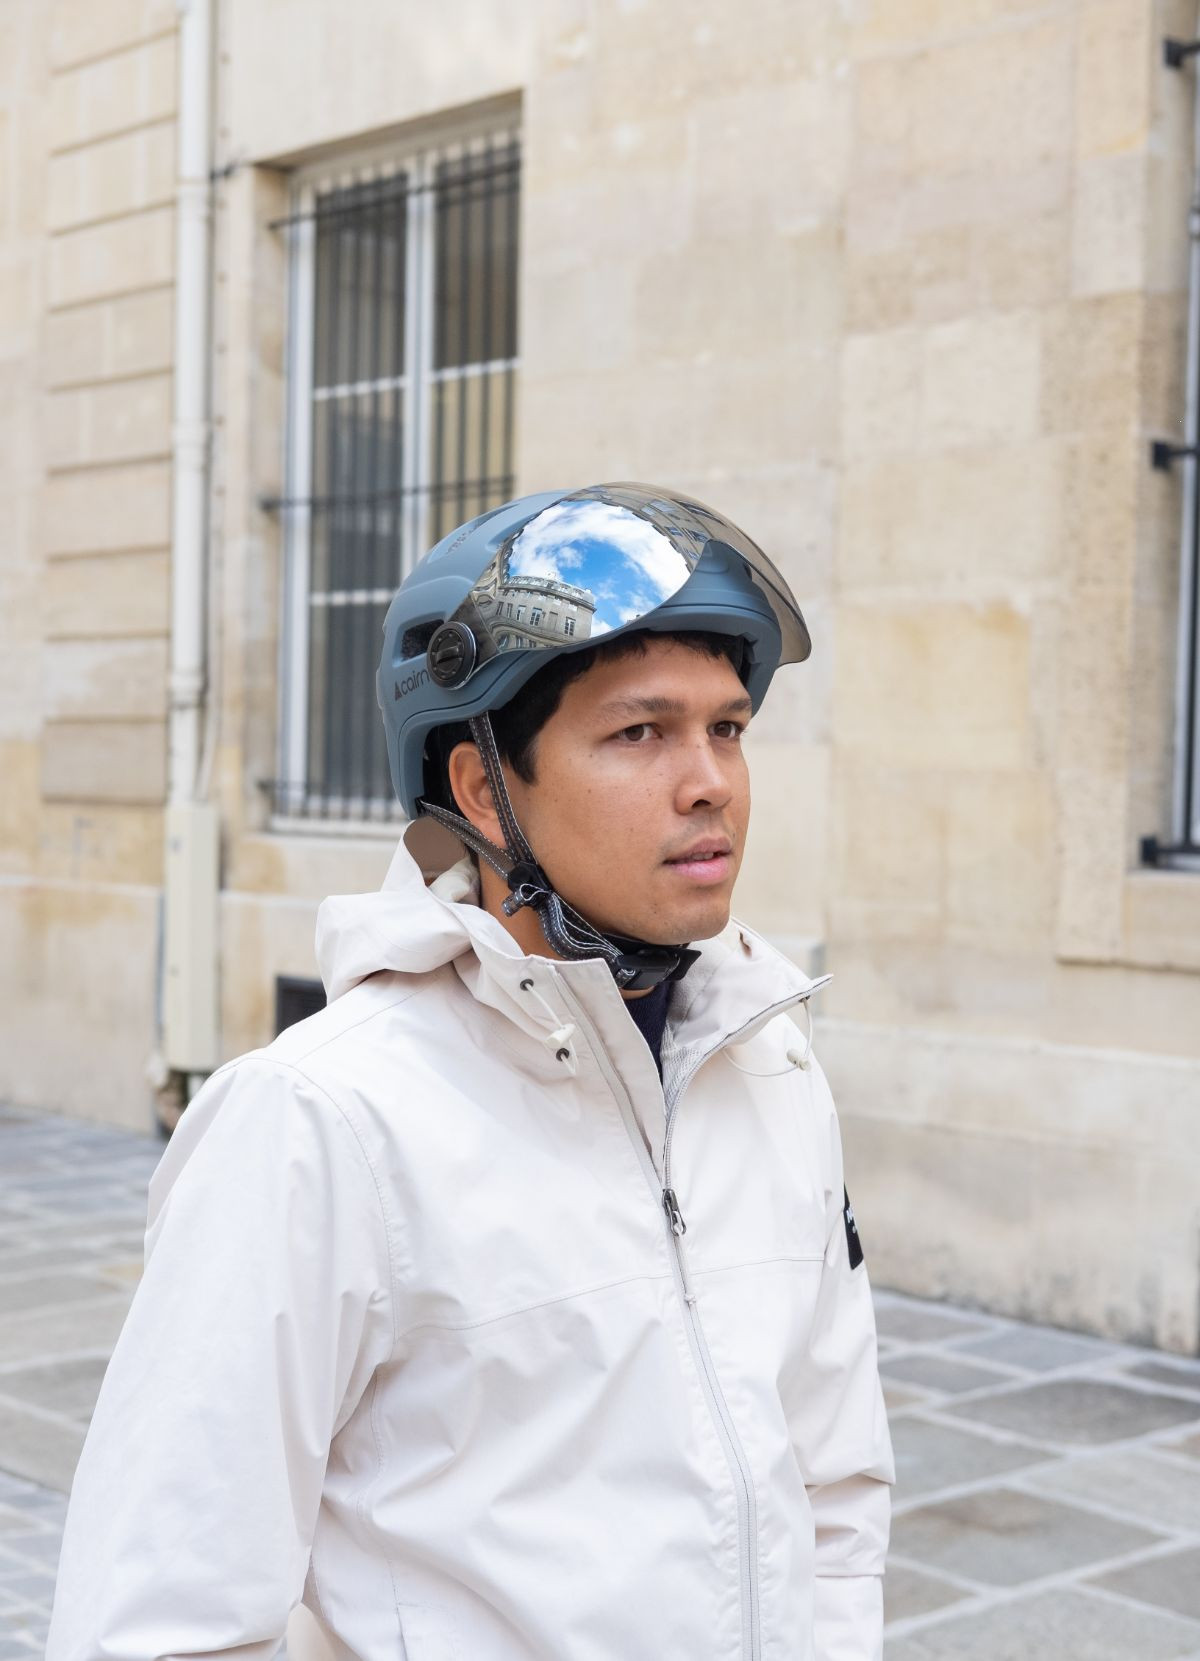 Hapo G Housse de protection vélo – 2015